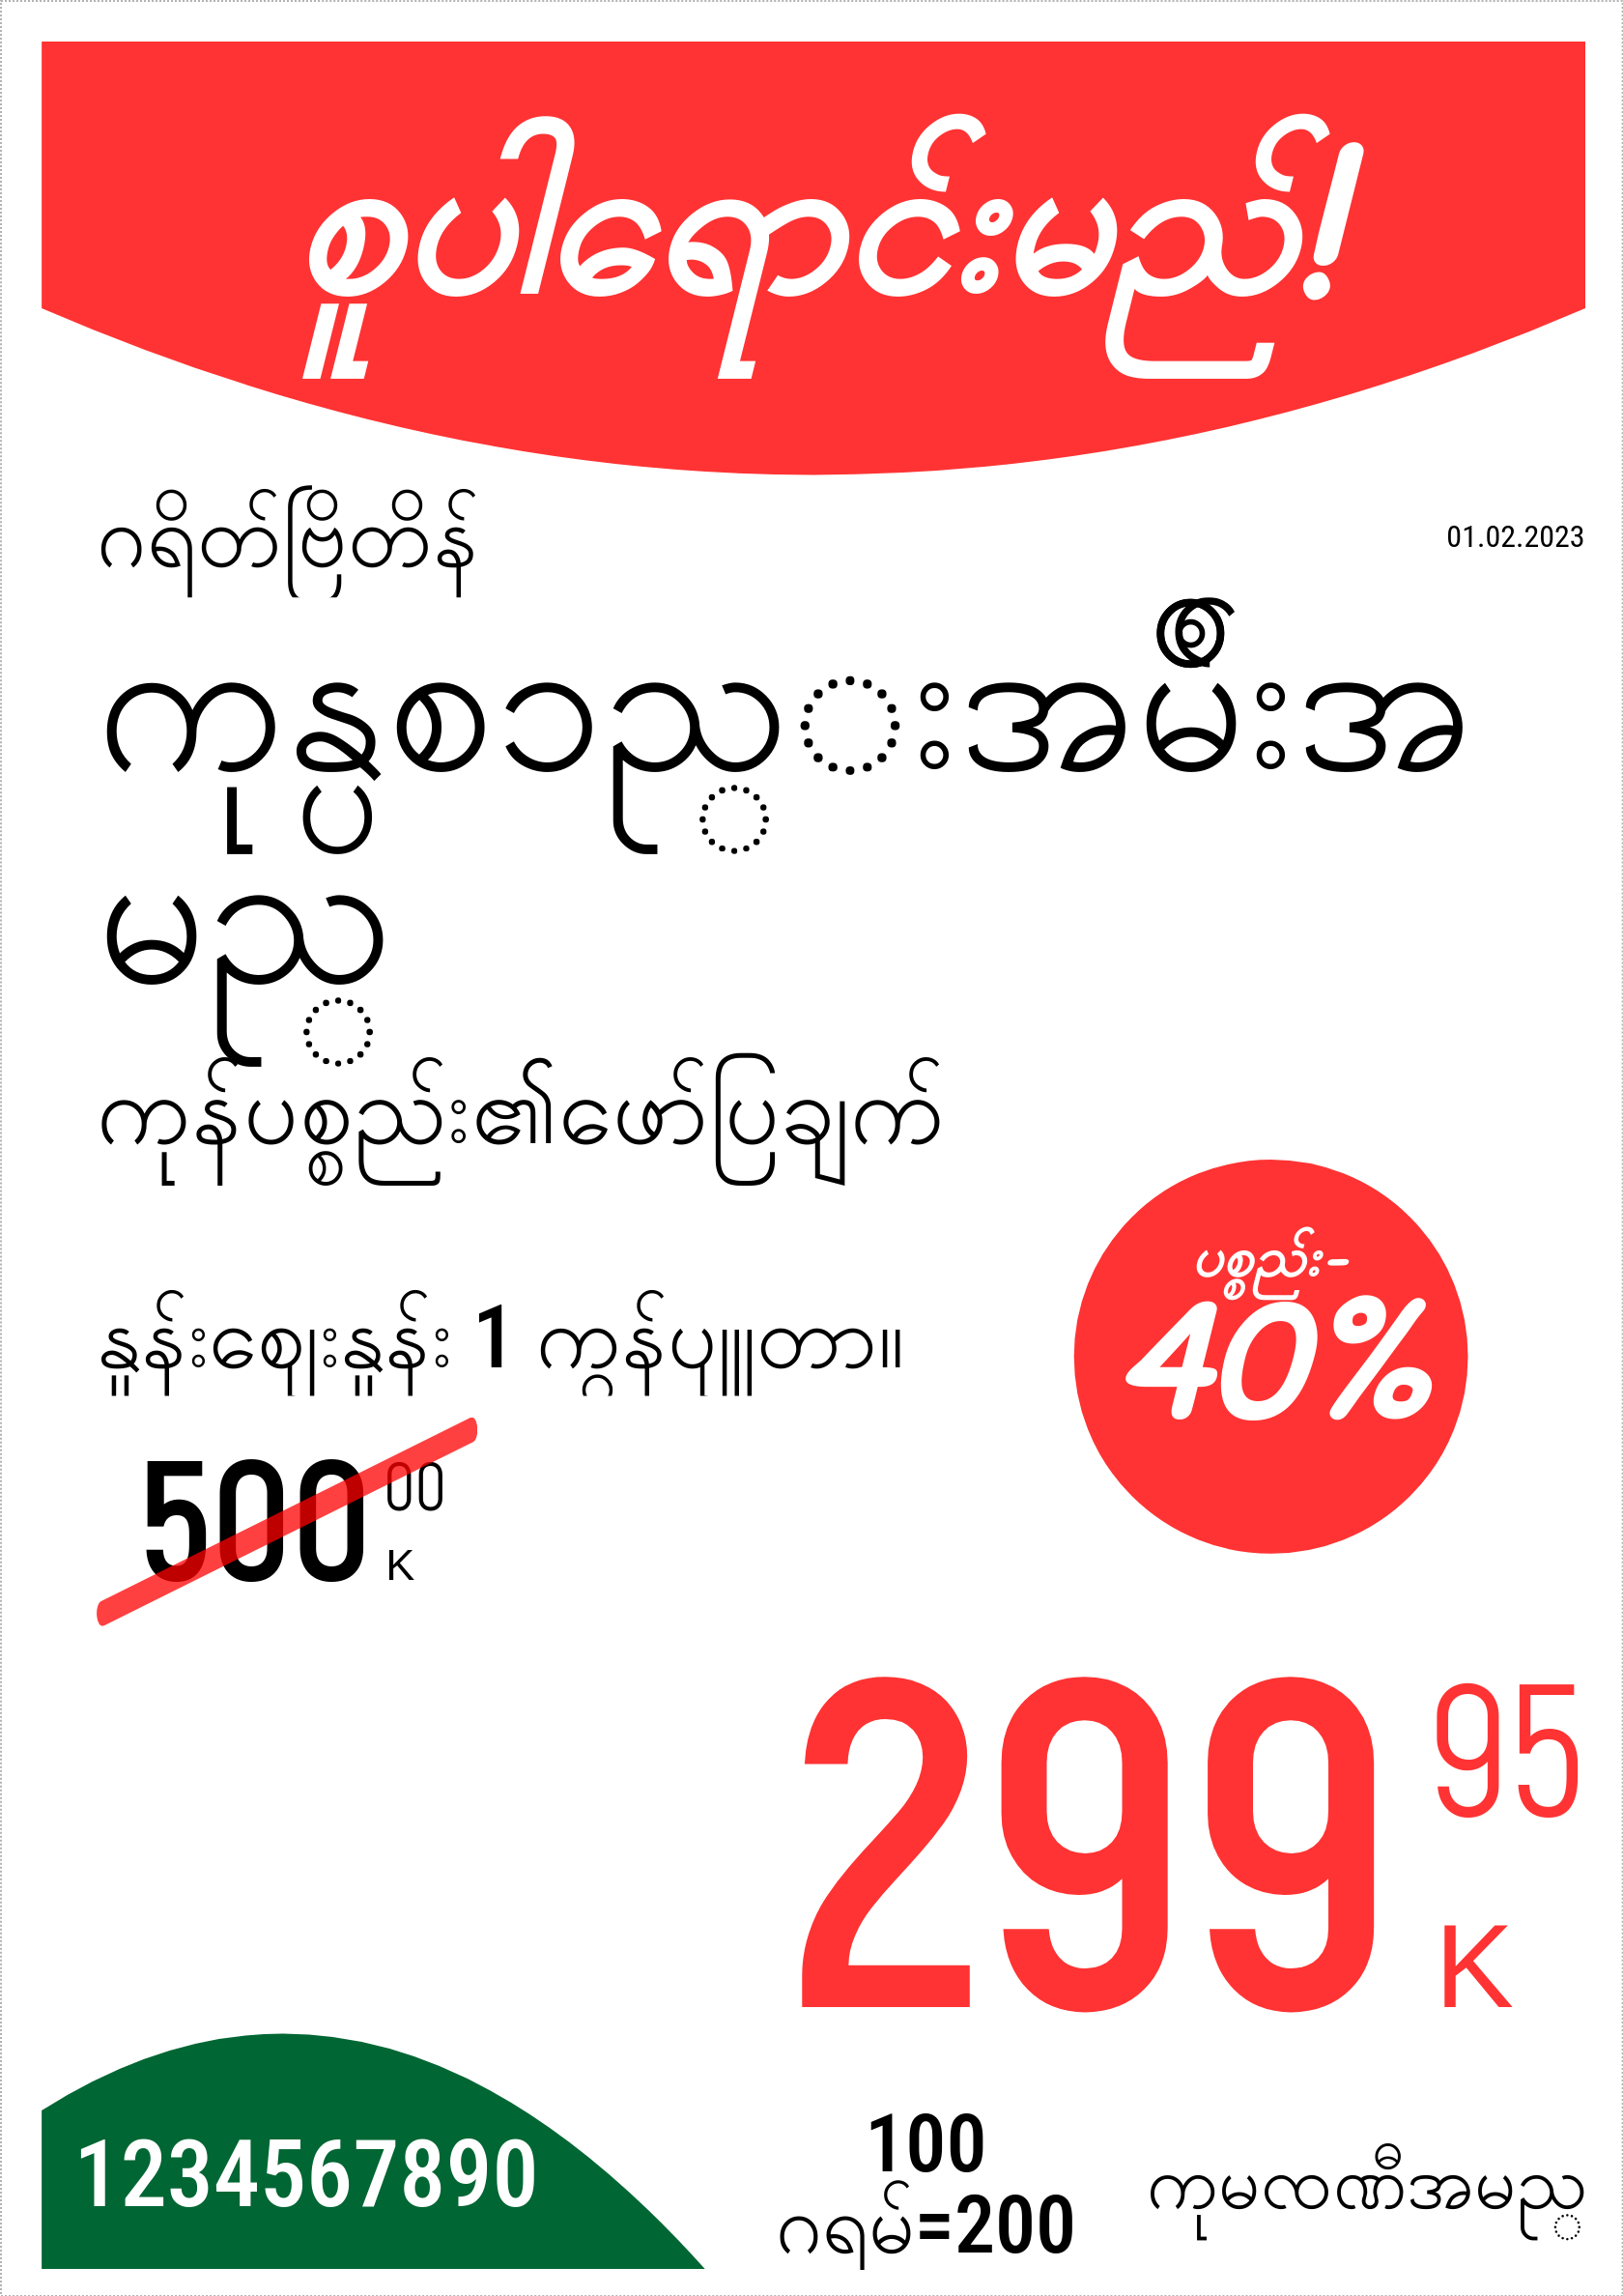 မြန်မာဘာသာ မူလနေရာ / ဒေါင်လိုက် / တစ်ဦးက4(စာမျက်နှာအပြည့်အစုံ) / ပရိုမိုးရှင်း